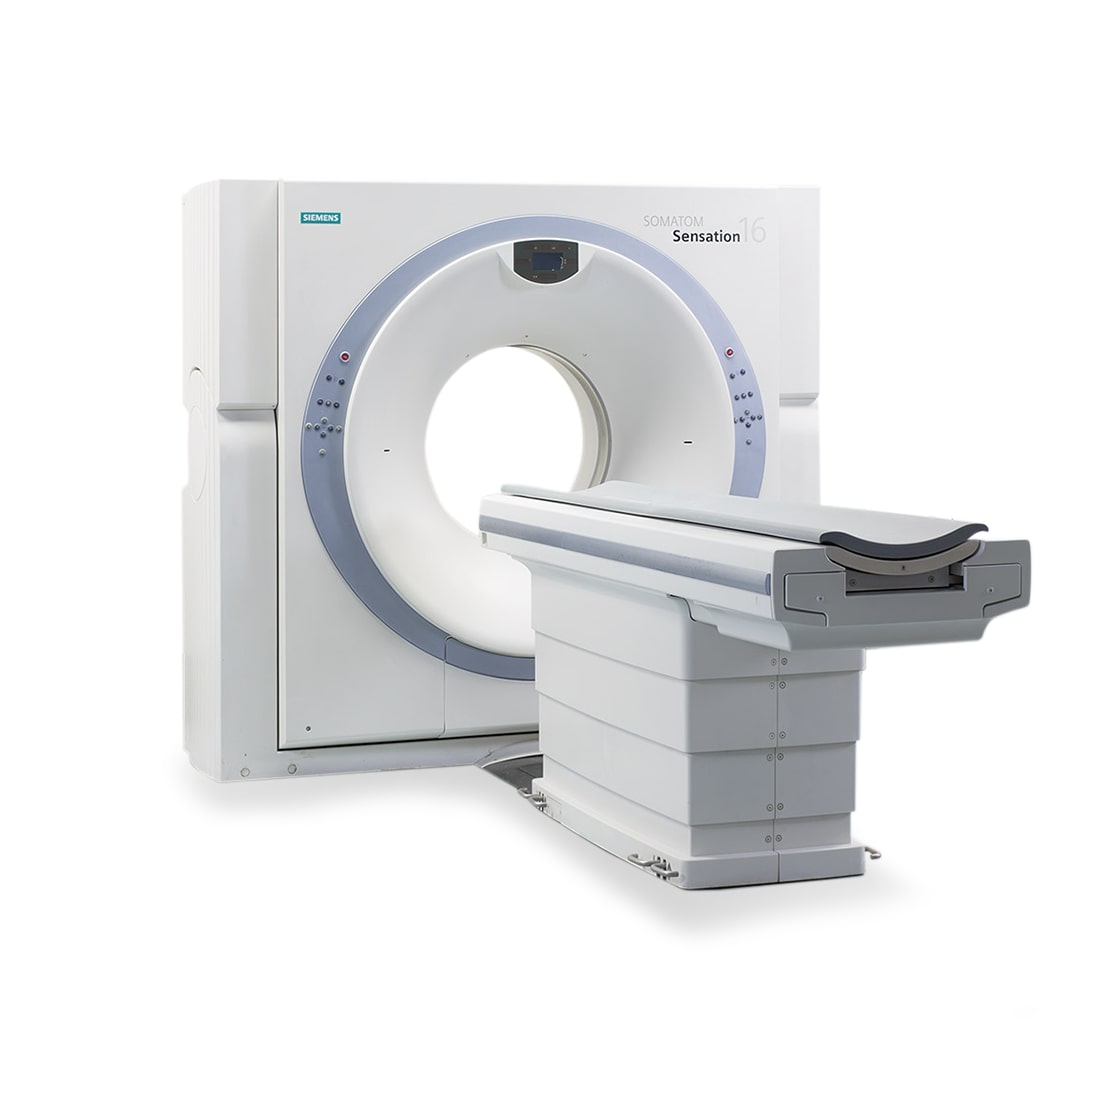 Siemens SOMATOM Sensation 16 Slice CT Scanner